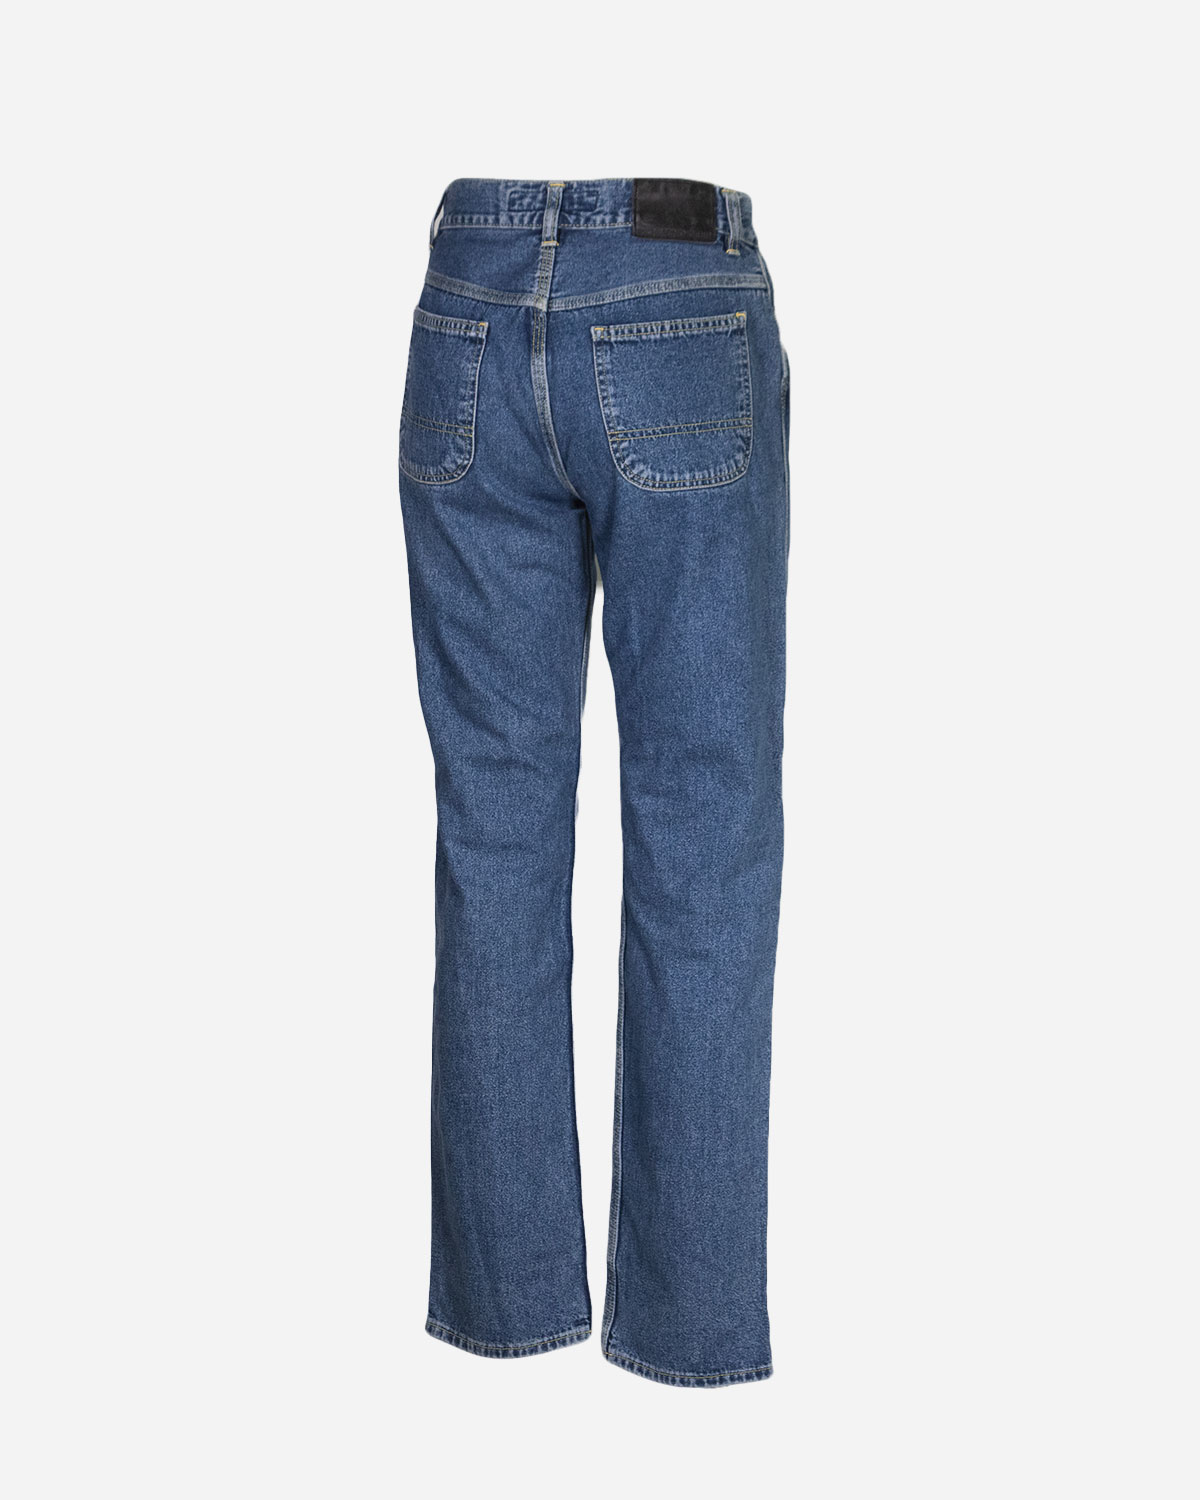 Box quattro pantaloni jeans firmato top